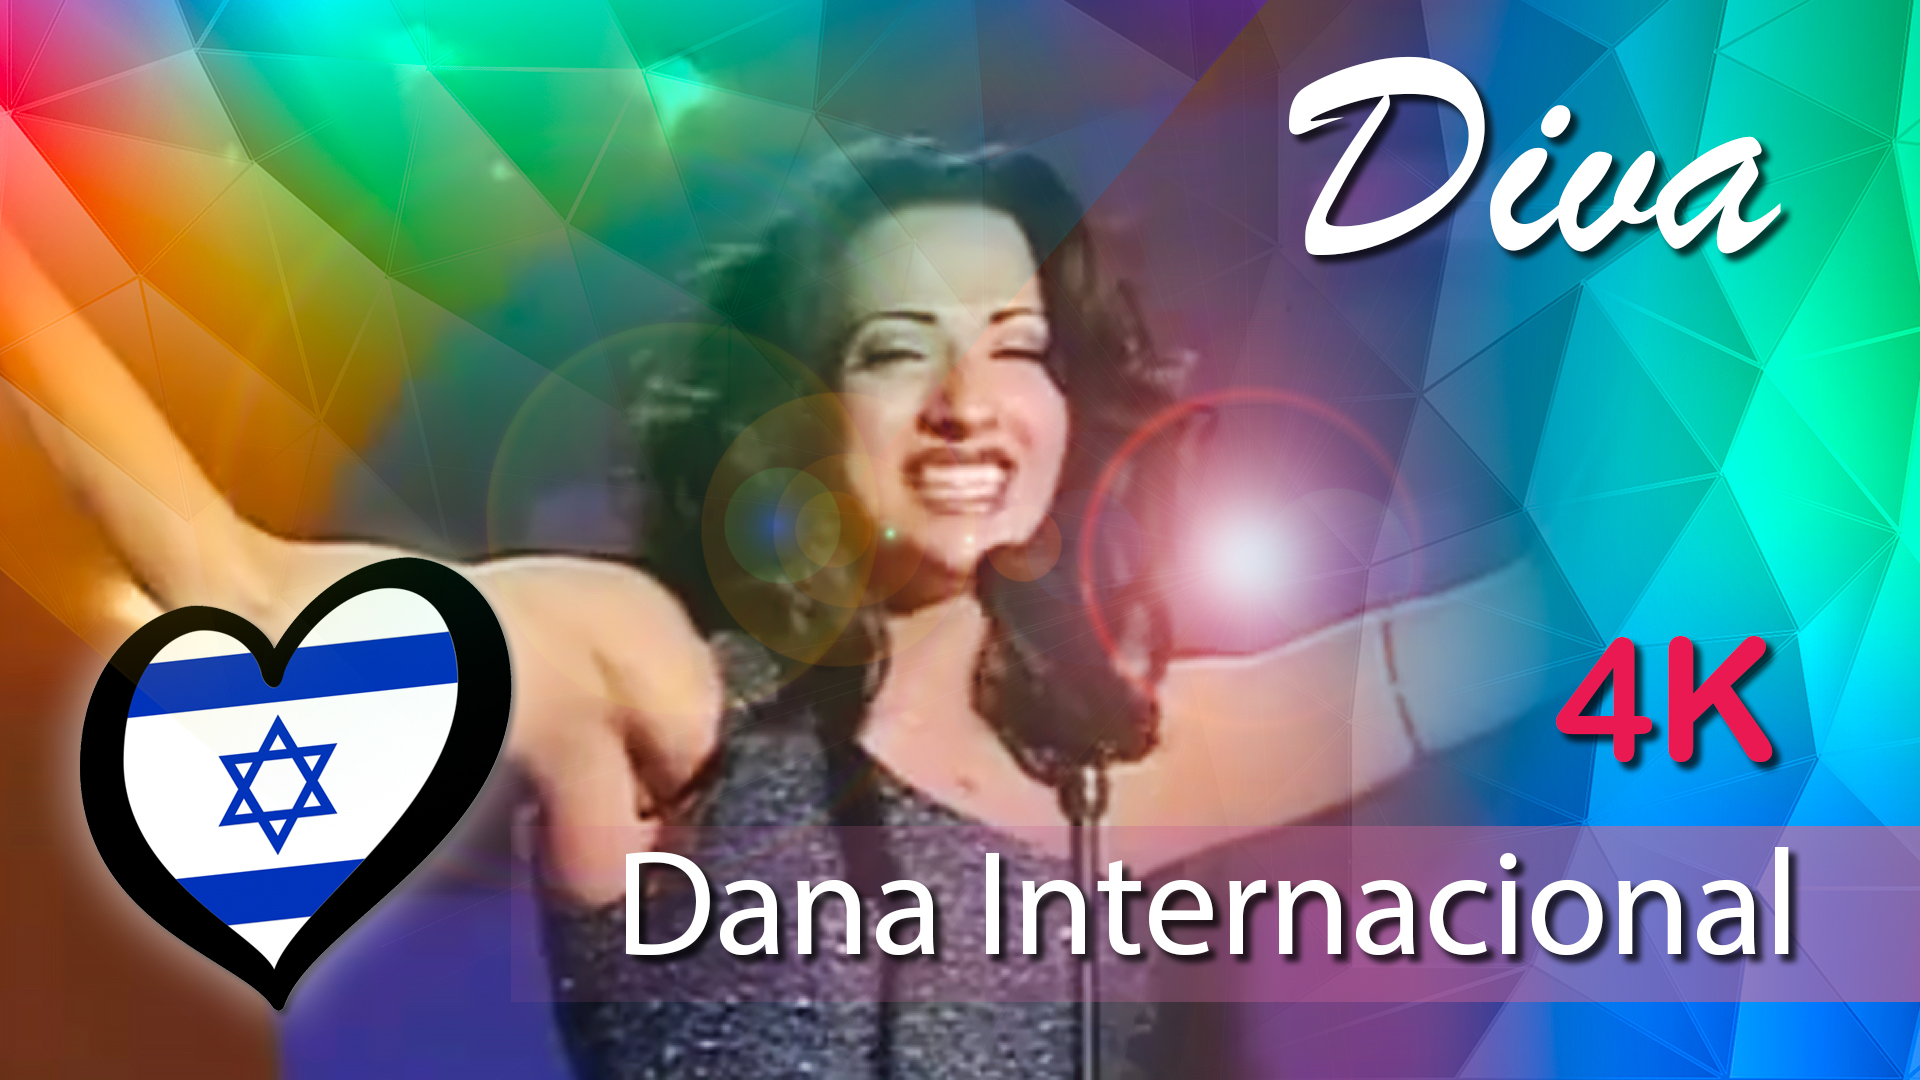 DIVA, DANA INTERNATIONAL 4K, DIVA ISRAEL 1998 4K